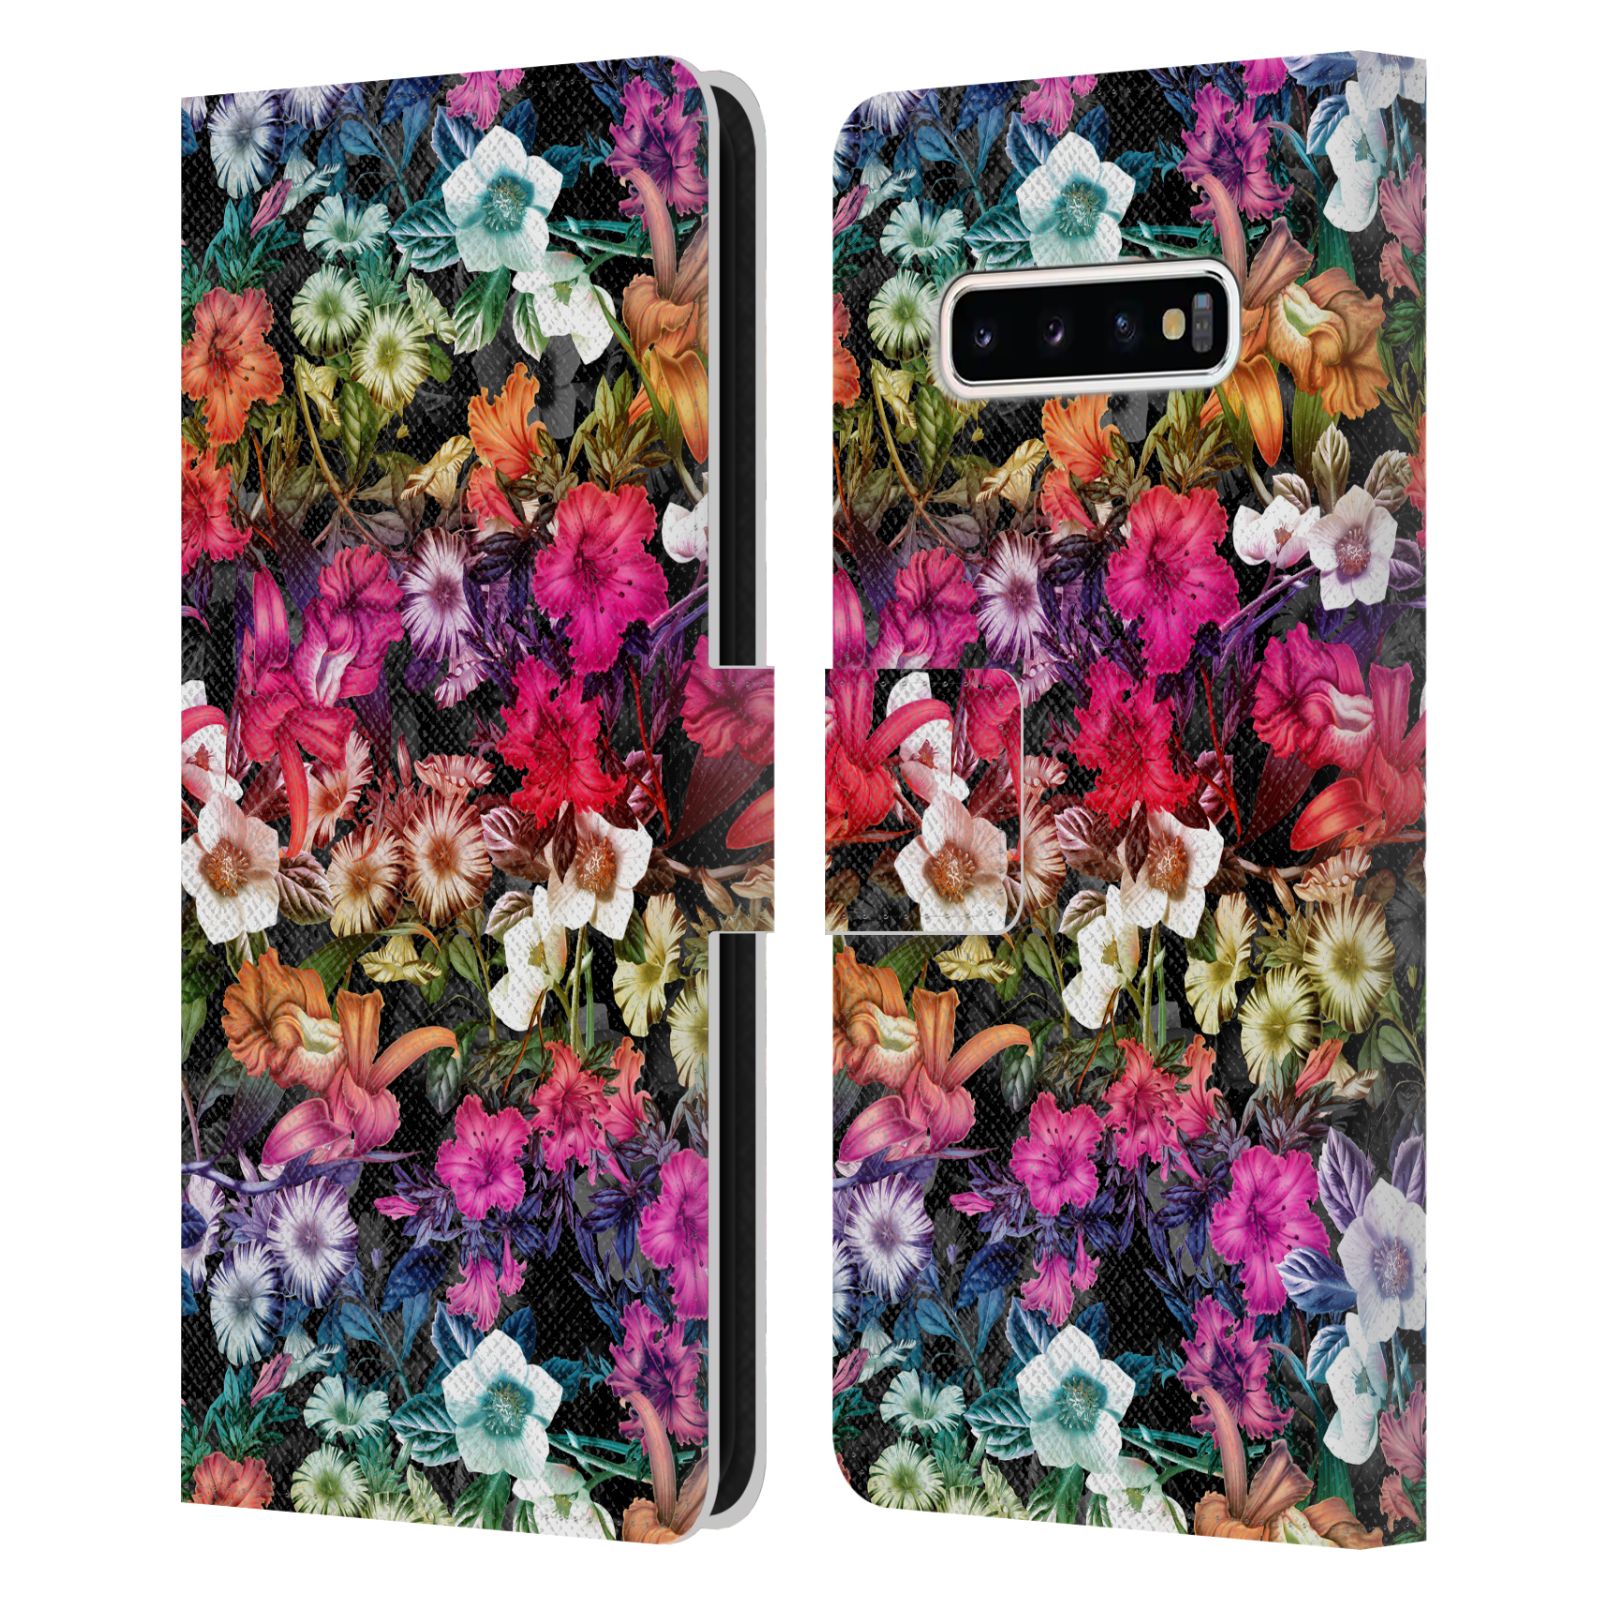 Pouzdro HEAD CASE pro mobil Samsung Galaxy S10+ / S10 PLUS - Burcu - Květiny multikolor